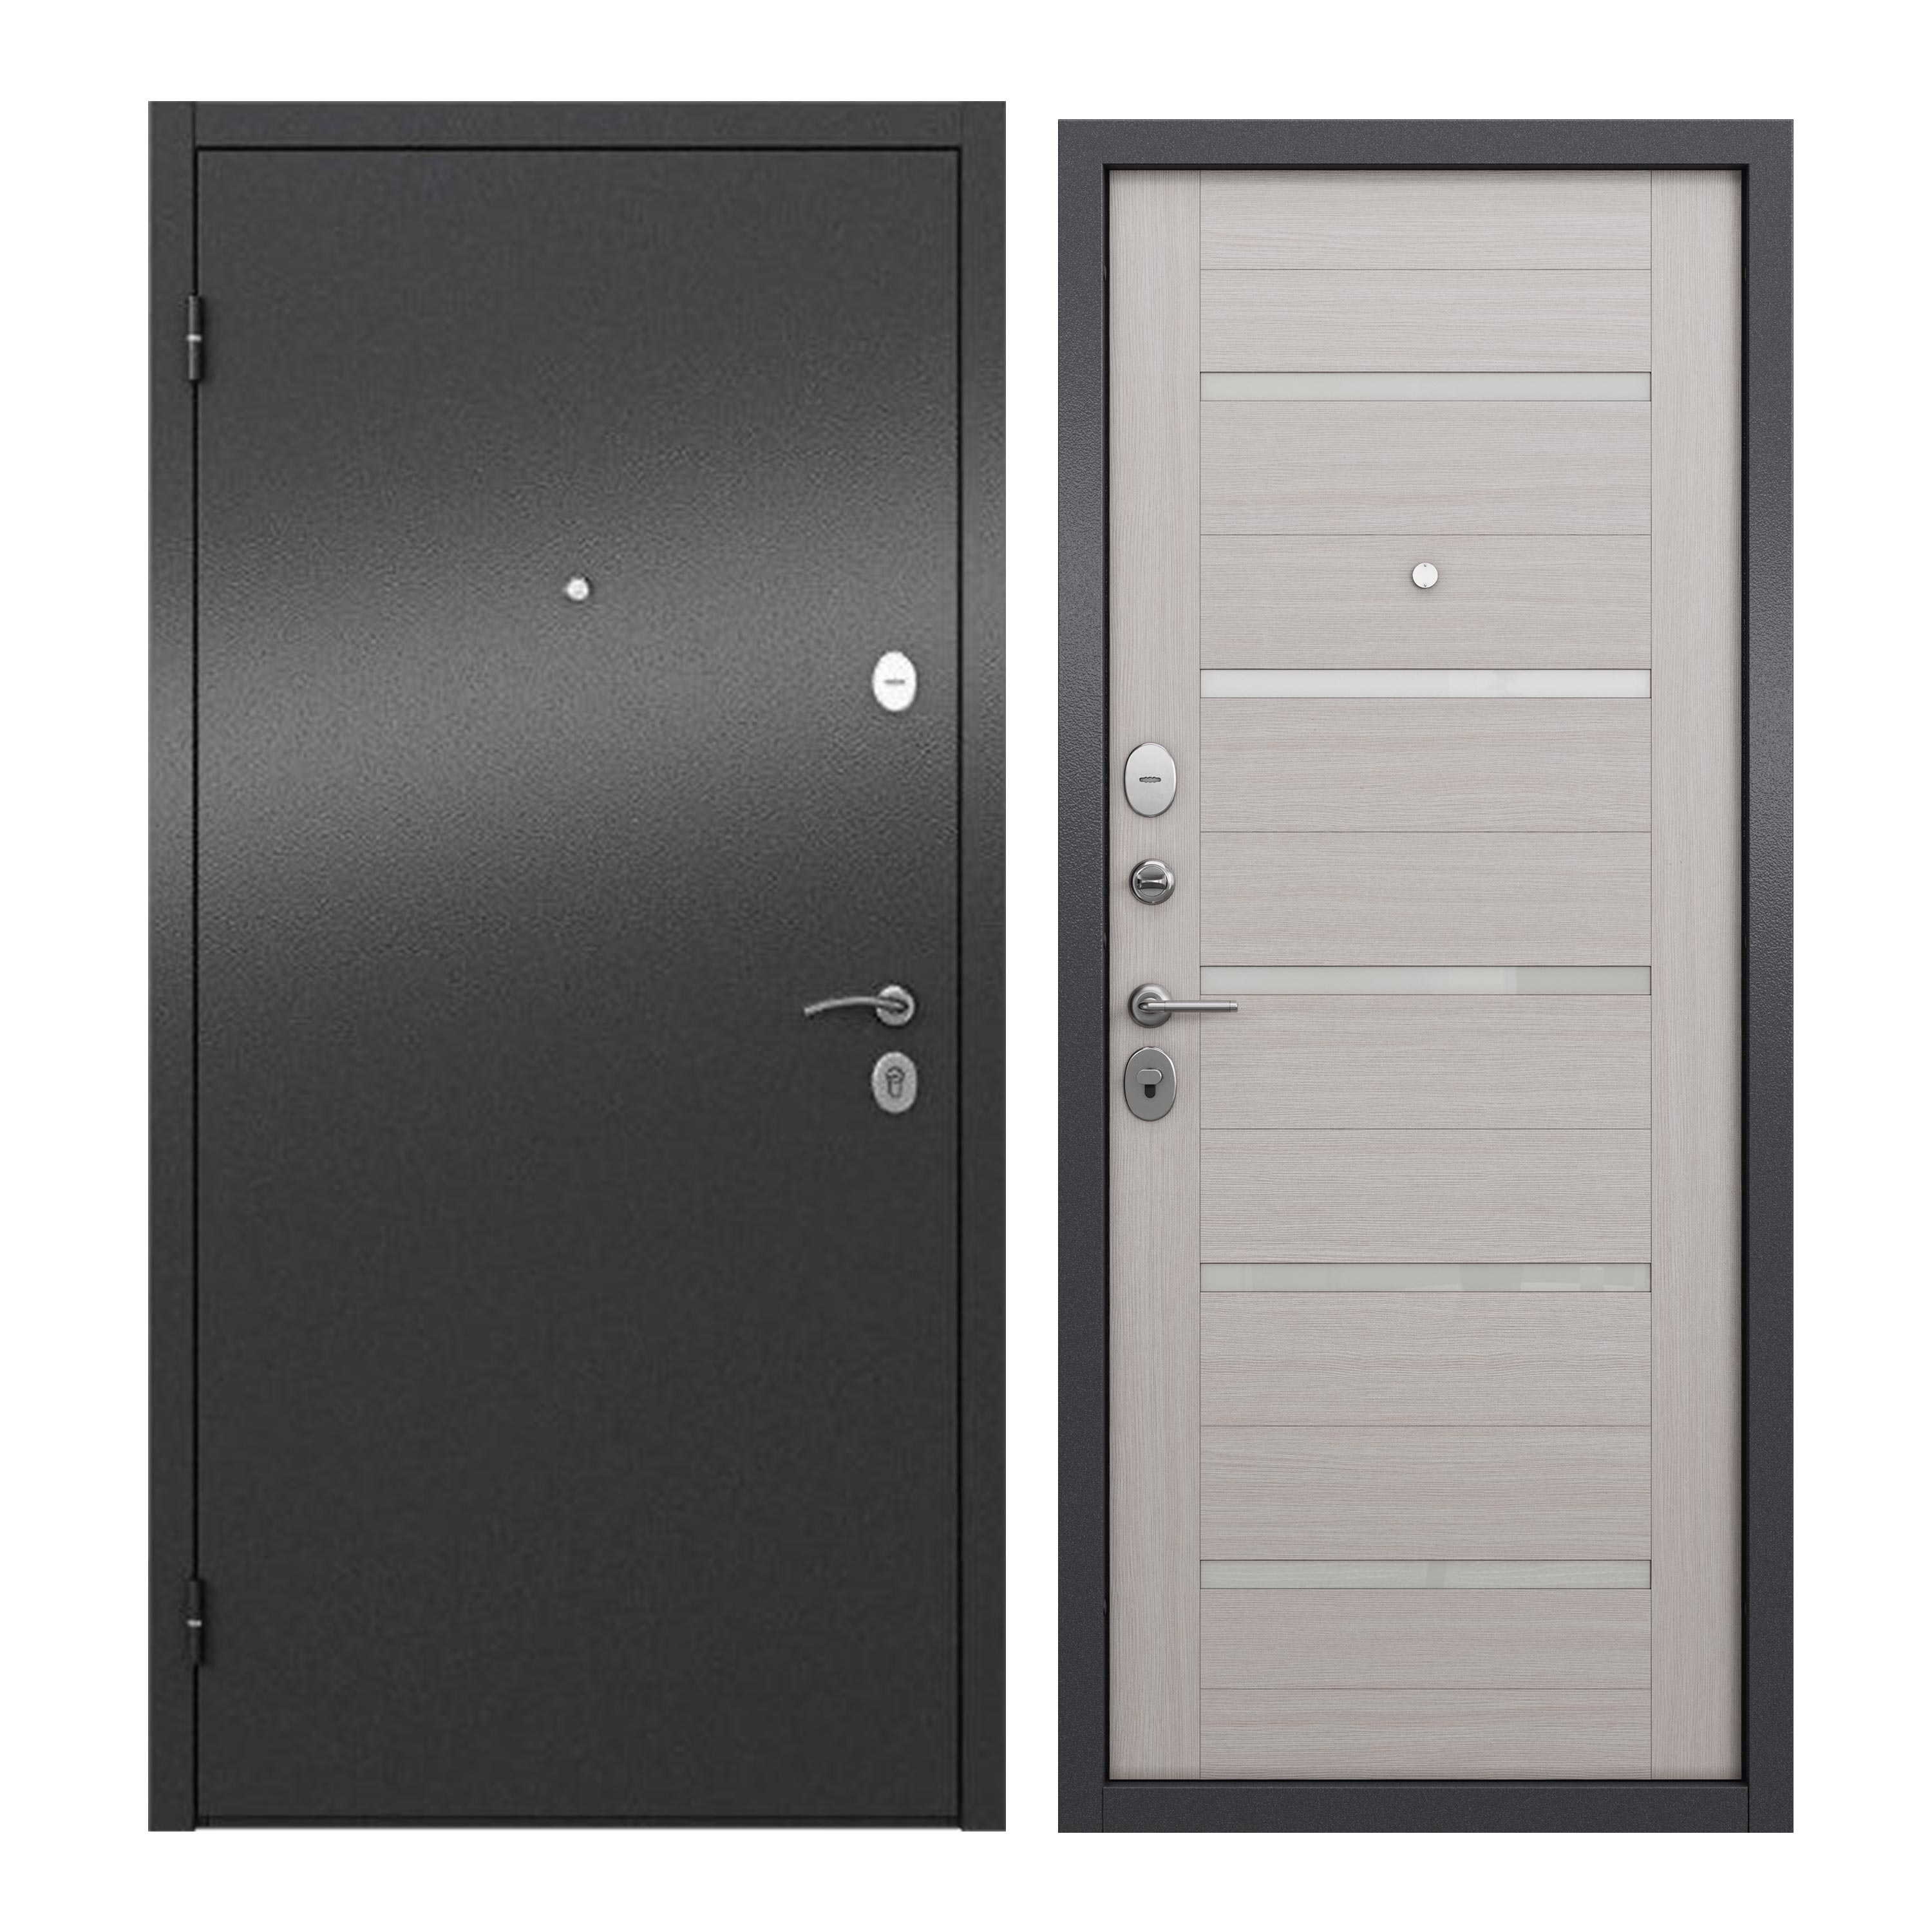 Дверь входная для квартиры ProLine металлическая Apartment X 960х2050, левая, серый дневник для 1 4 классов